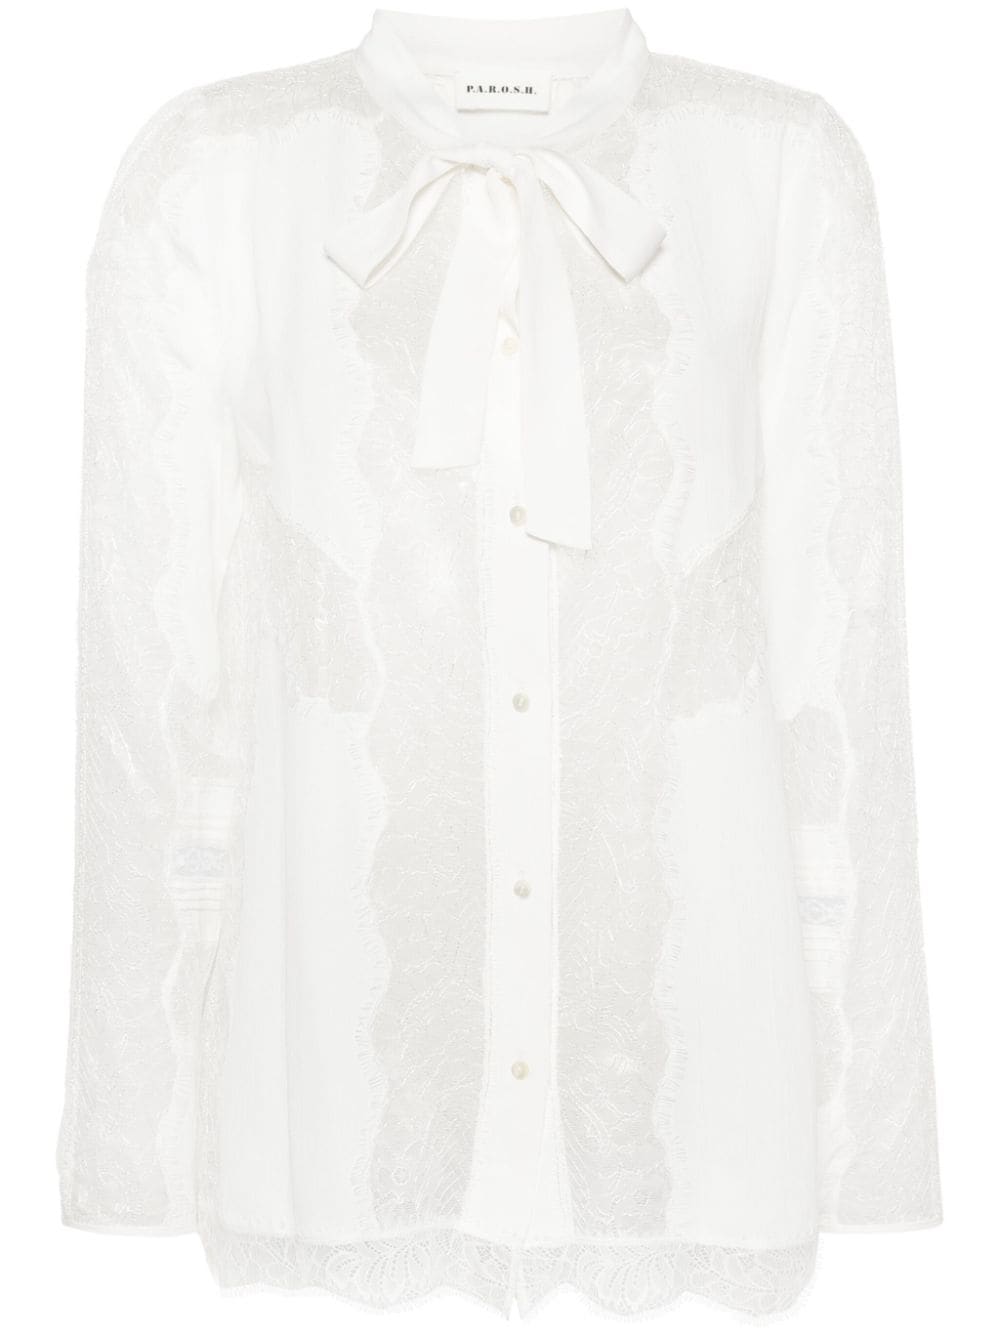 P.A.R.O.S.H. semi-sheer lace shirt - White von P.A.R.O.S.H.